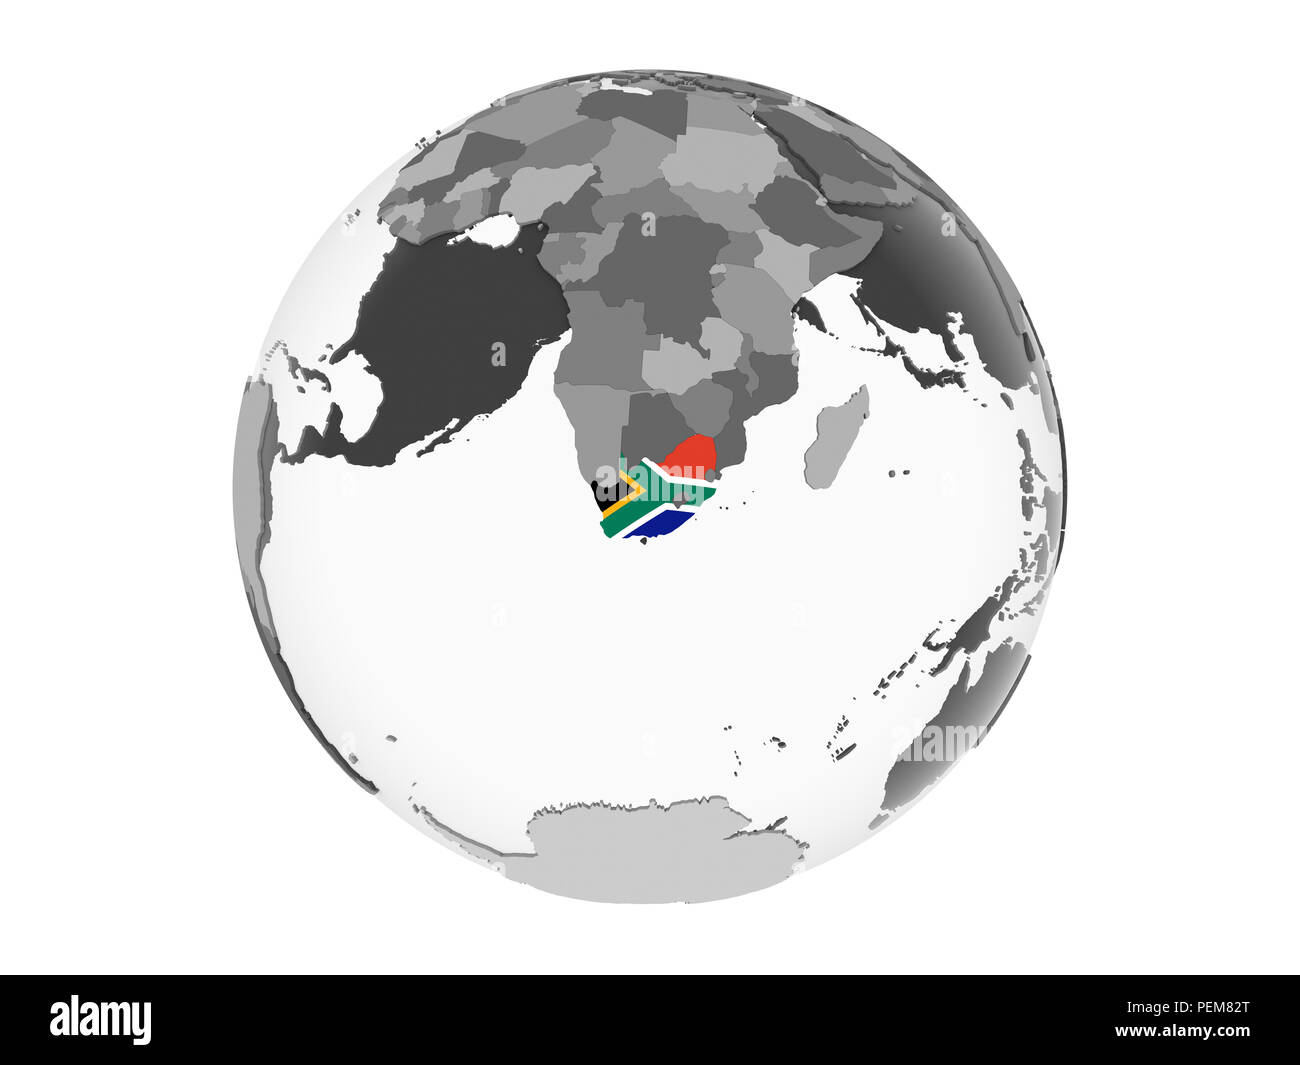 Khám phá vẻ đẹp đầy màu sắc của cờ hoa Nam Phi trên quả cầu chính xác bằng công nghệ 3D. Đây là một cảnh tượng thú vị và sẽ khiến bạn muốn tìm hiểu thêm về quốc gia này ở Châu Phi.